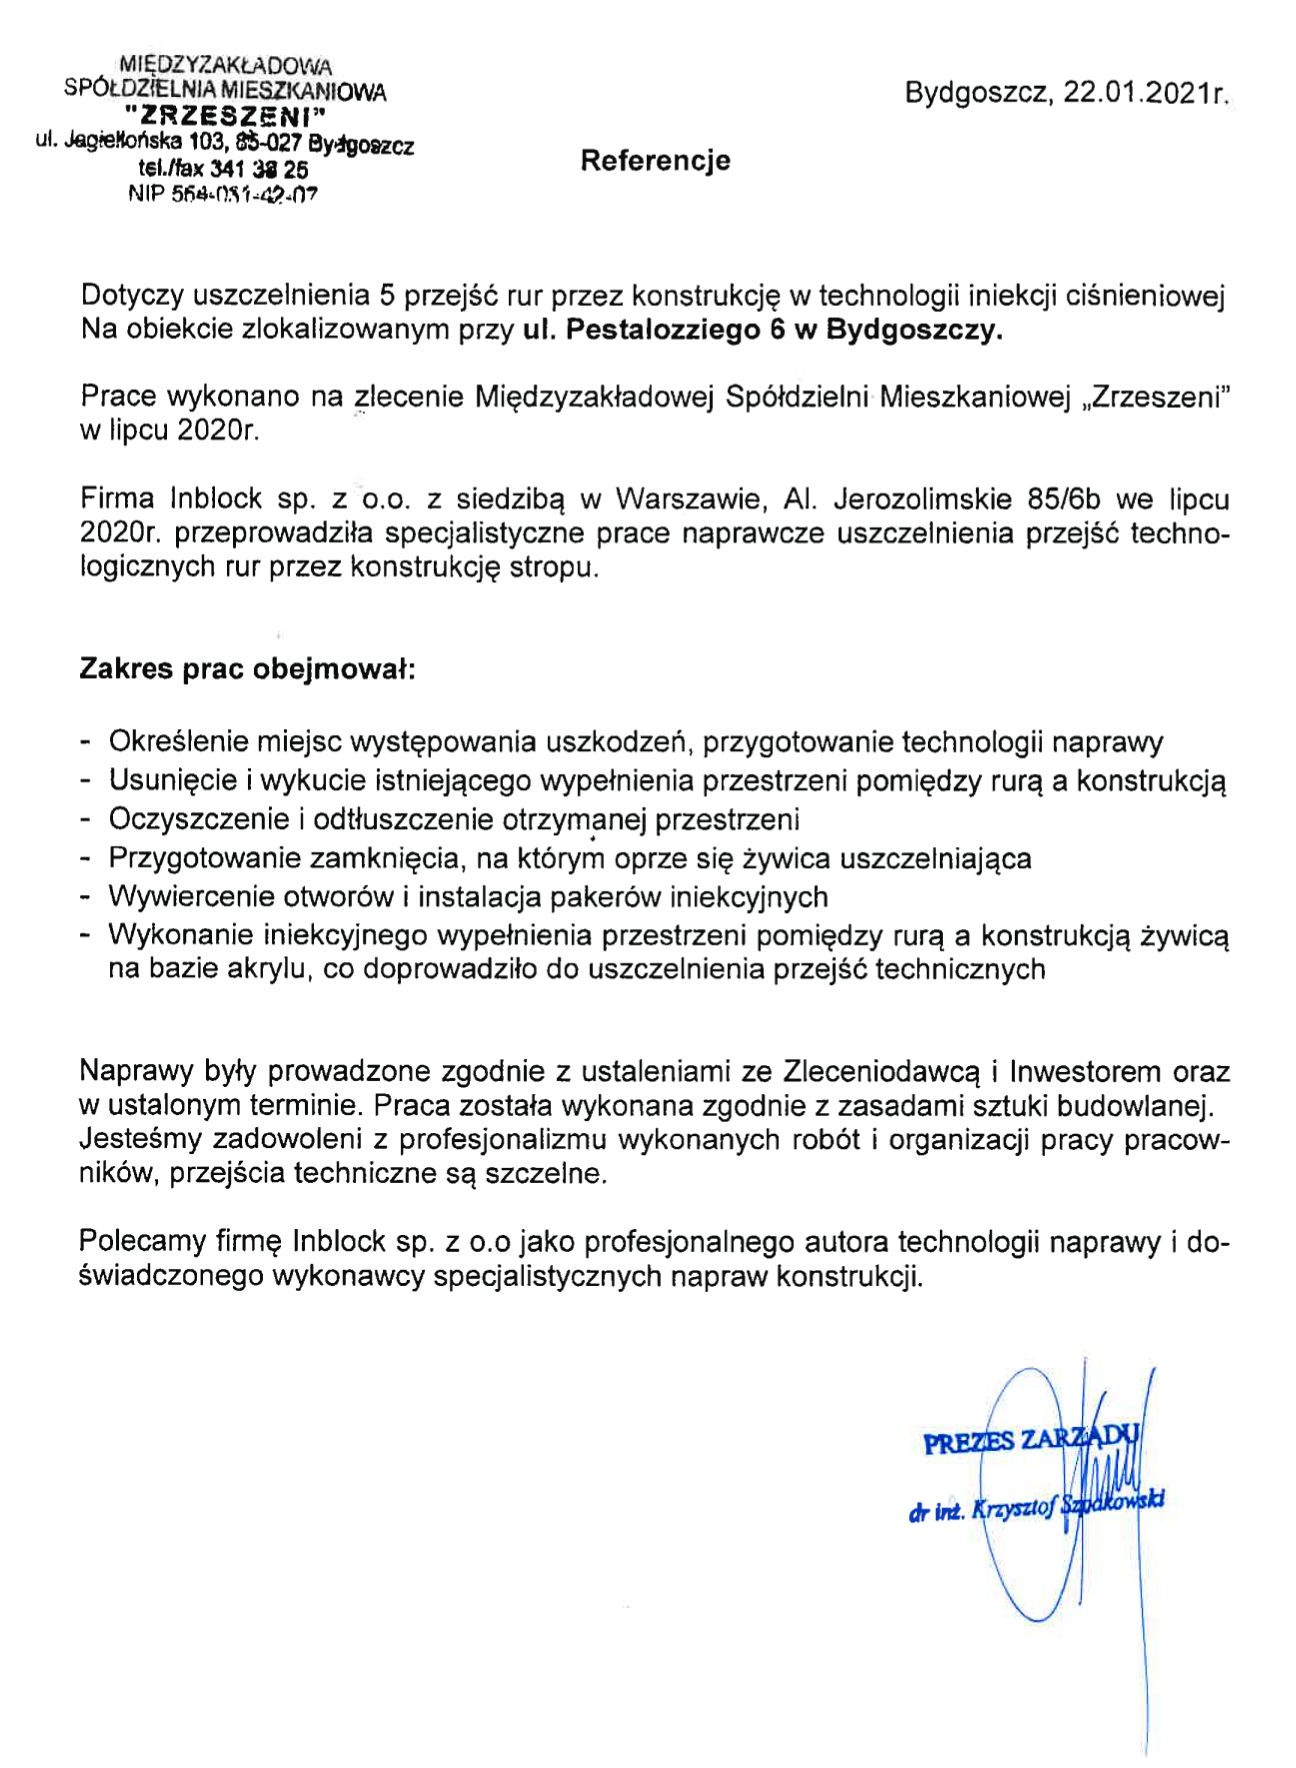 Referencje Inblock Międzyzakładowa Spółdzielnia Mieszkaniowa Zrzeszeni Bydgoszcz